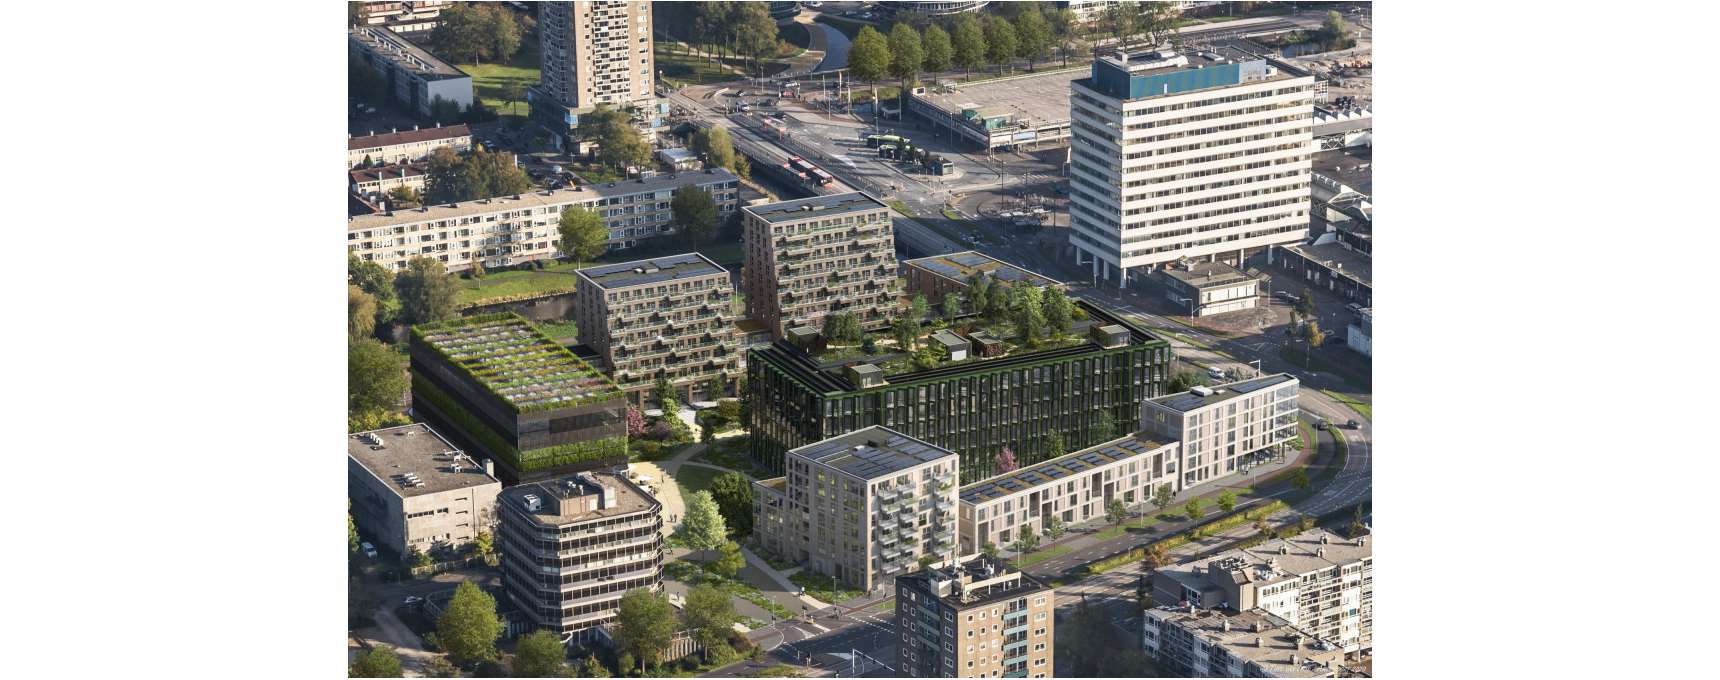 Nieuwbouwprojecten rondom Haarlem